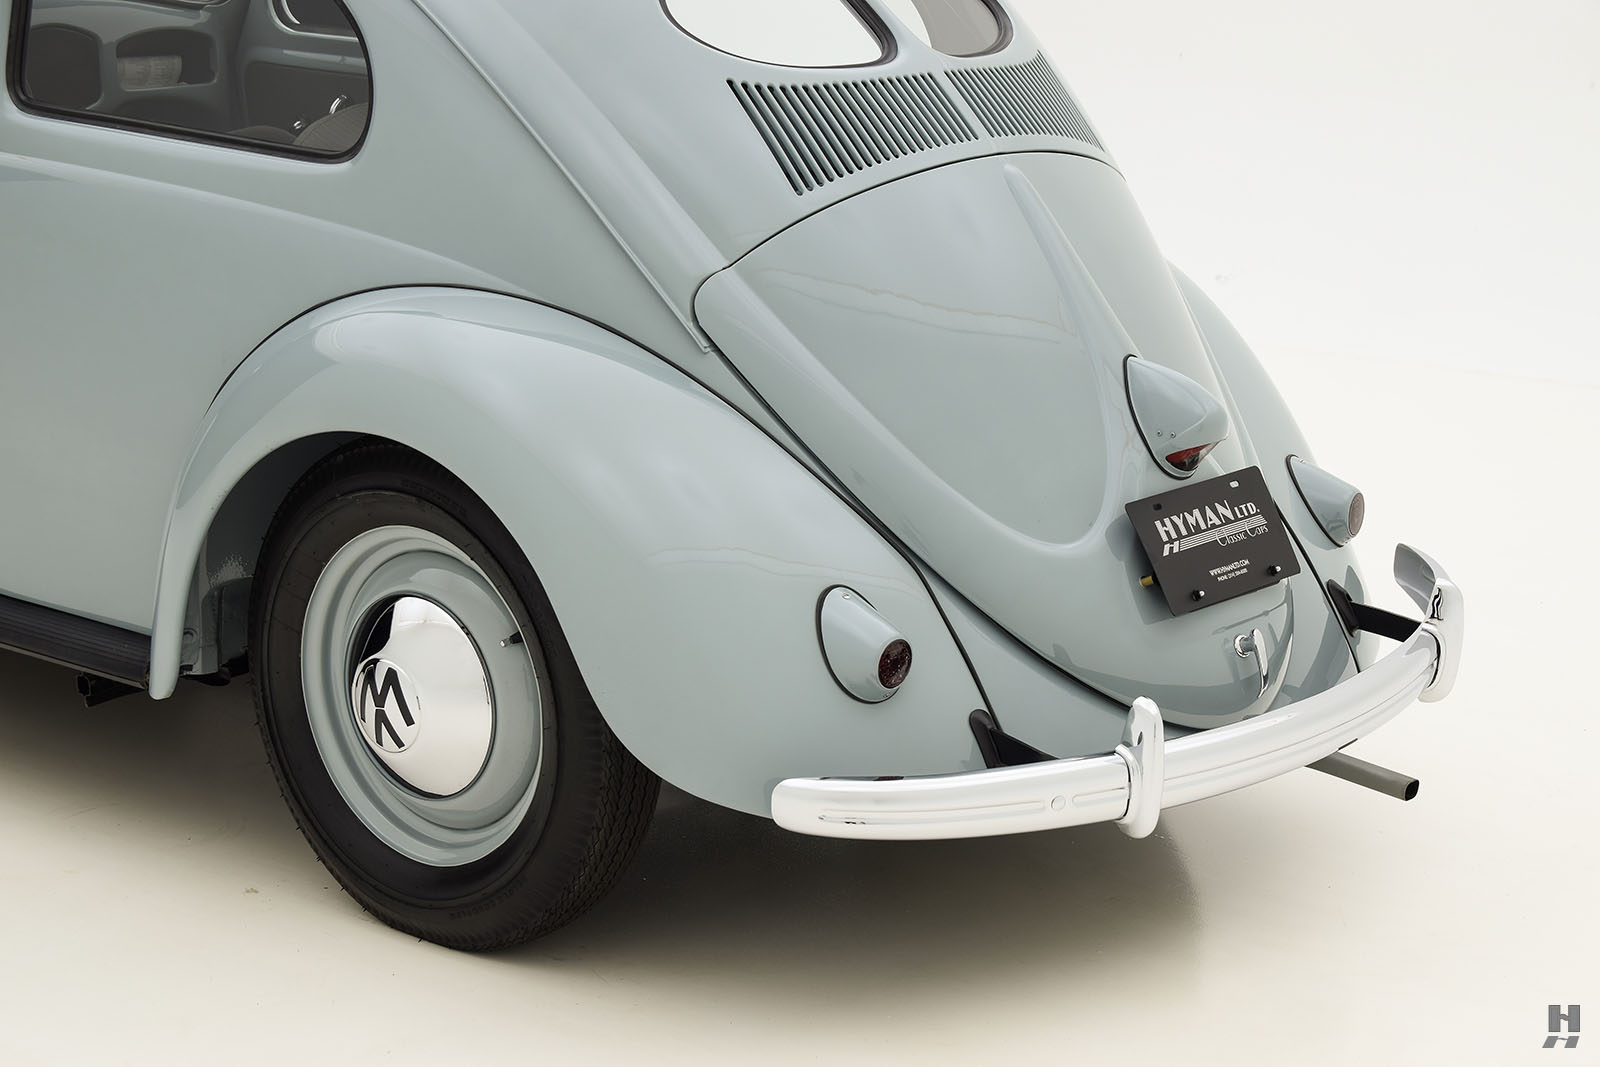 1959 volkswagen beetle